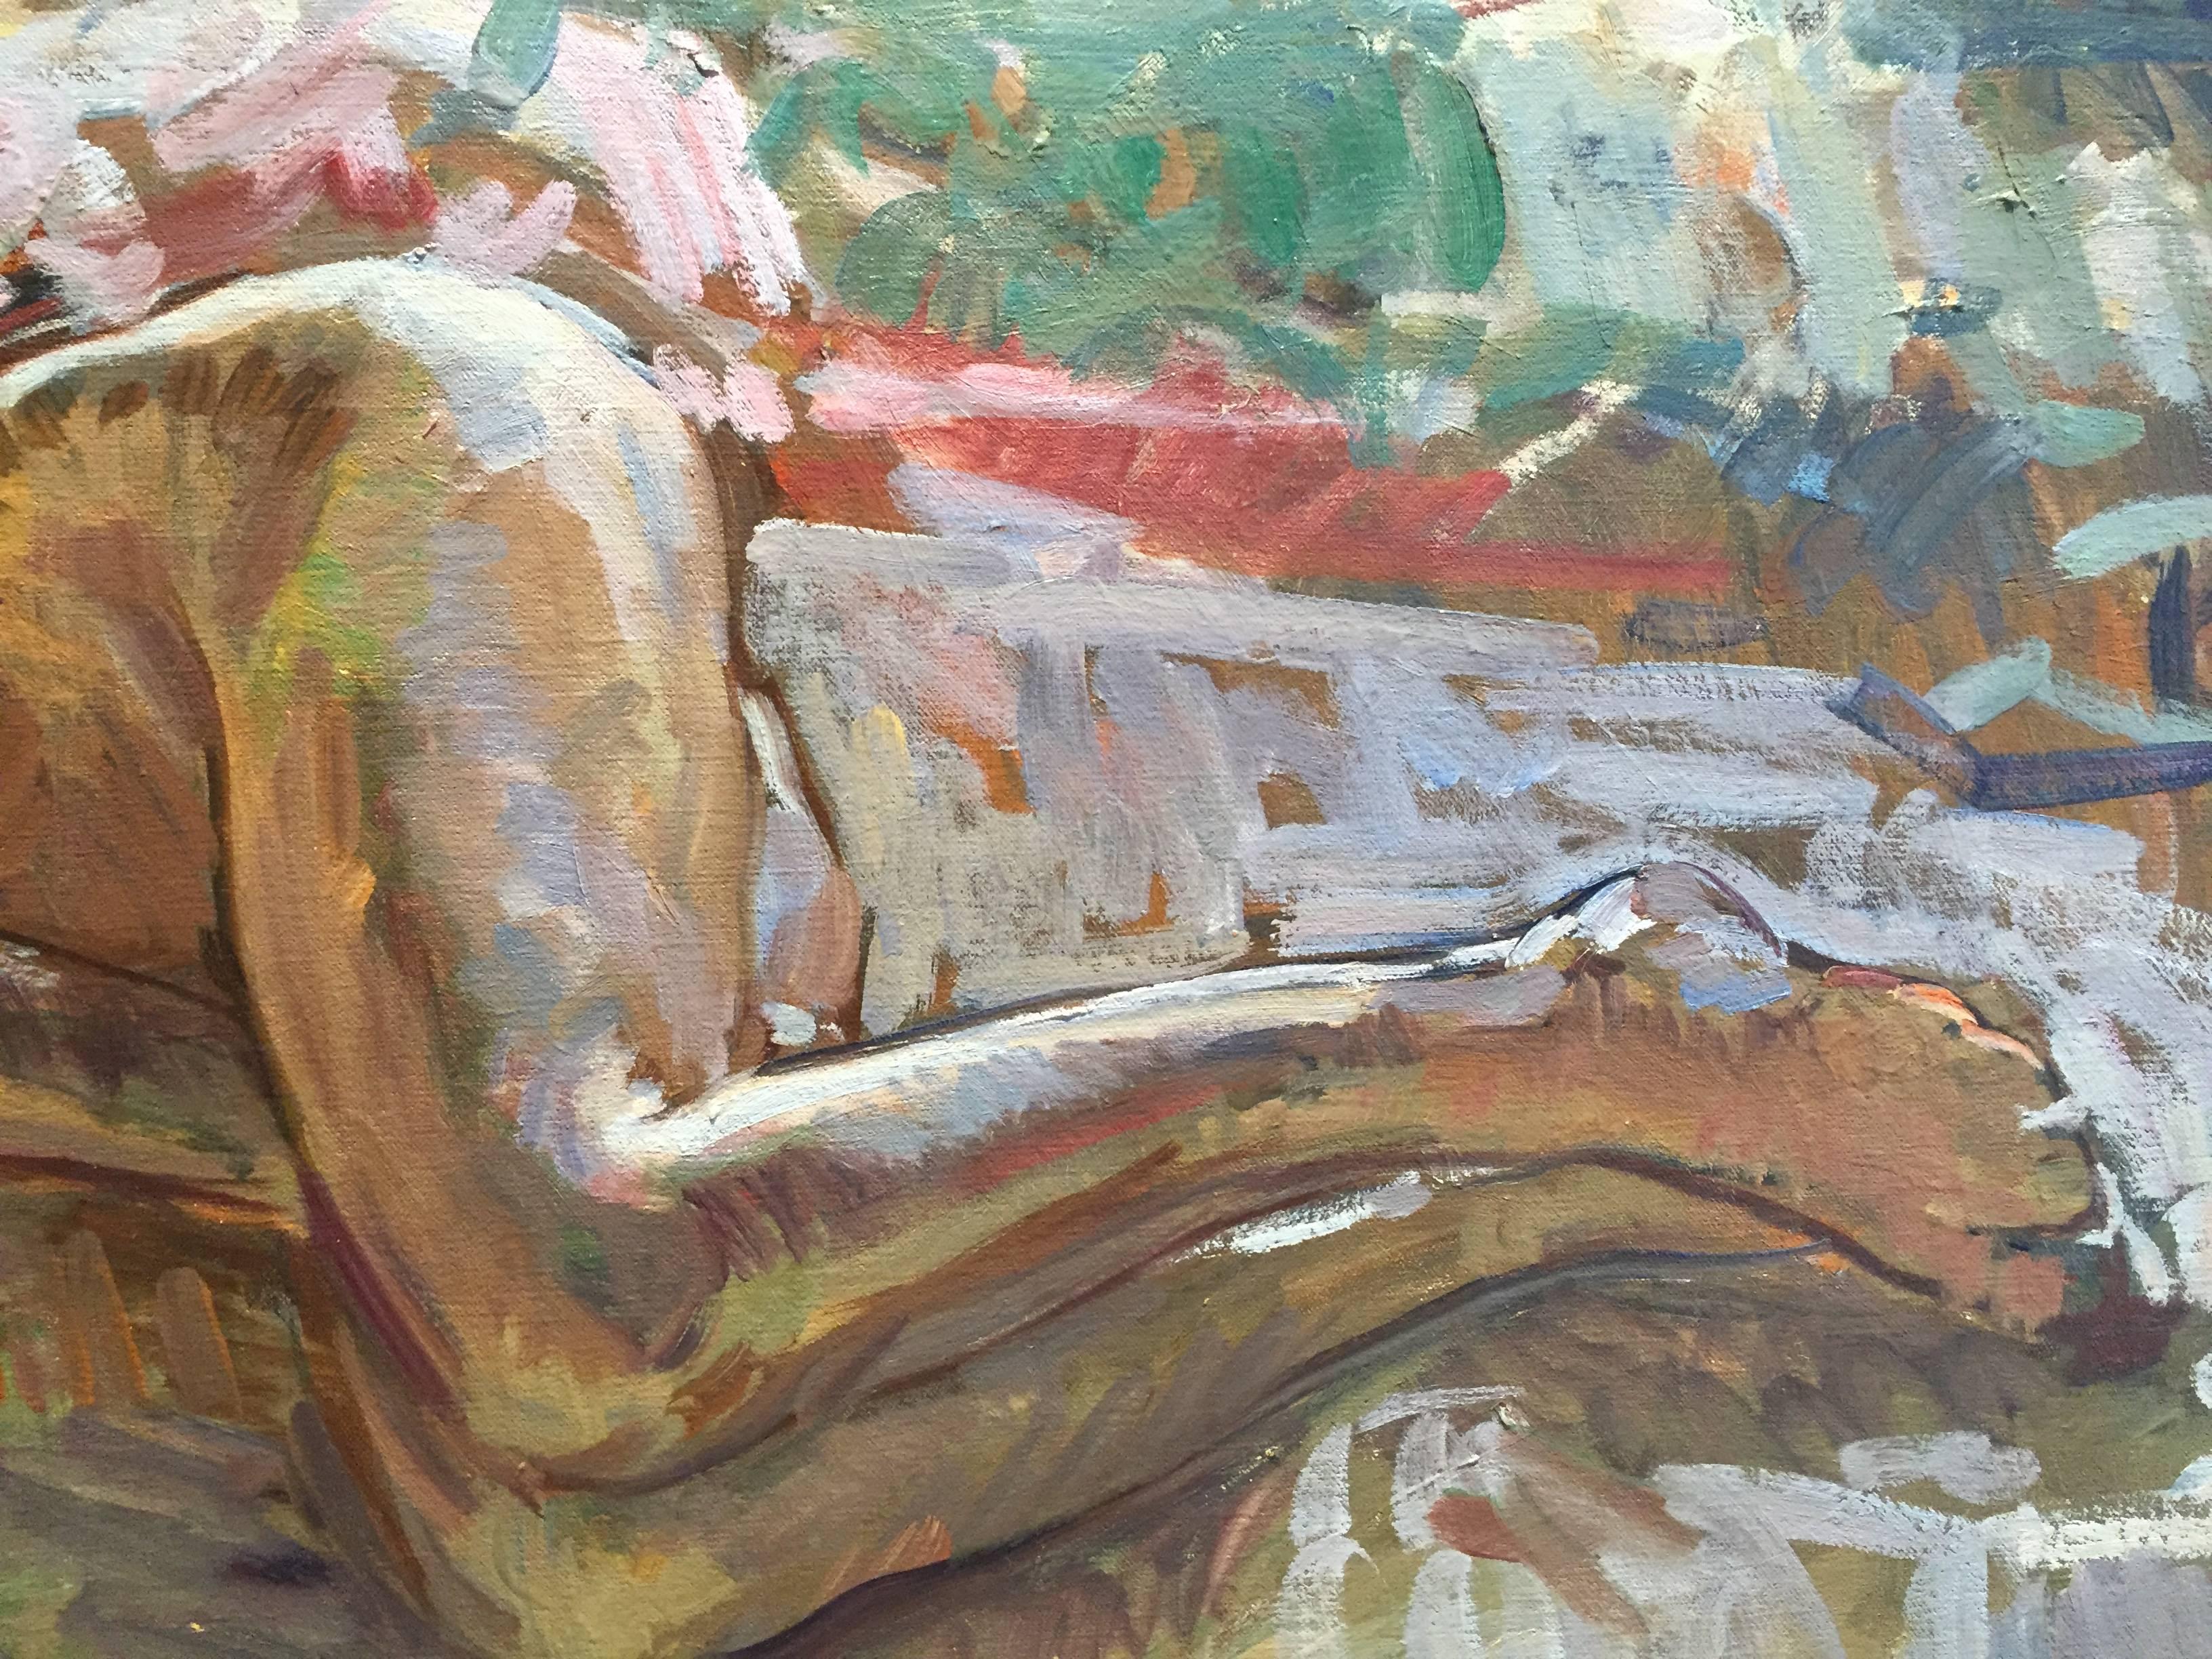 Das Ölgemälde zeigt eine nackte Frau, die tagsüber gemütlich schläft. Eine nackte Figur schläft zusammengerollt auf einem Bett, das mit bedruckten Textilien geschmückt ist. Das offene Fenster strahlt das Licht eines hellen und sonnigen Tages aus.